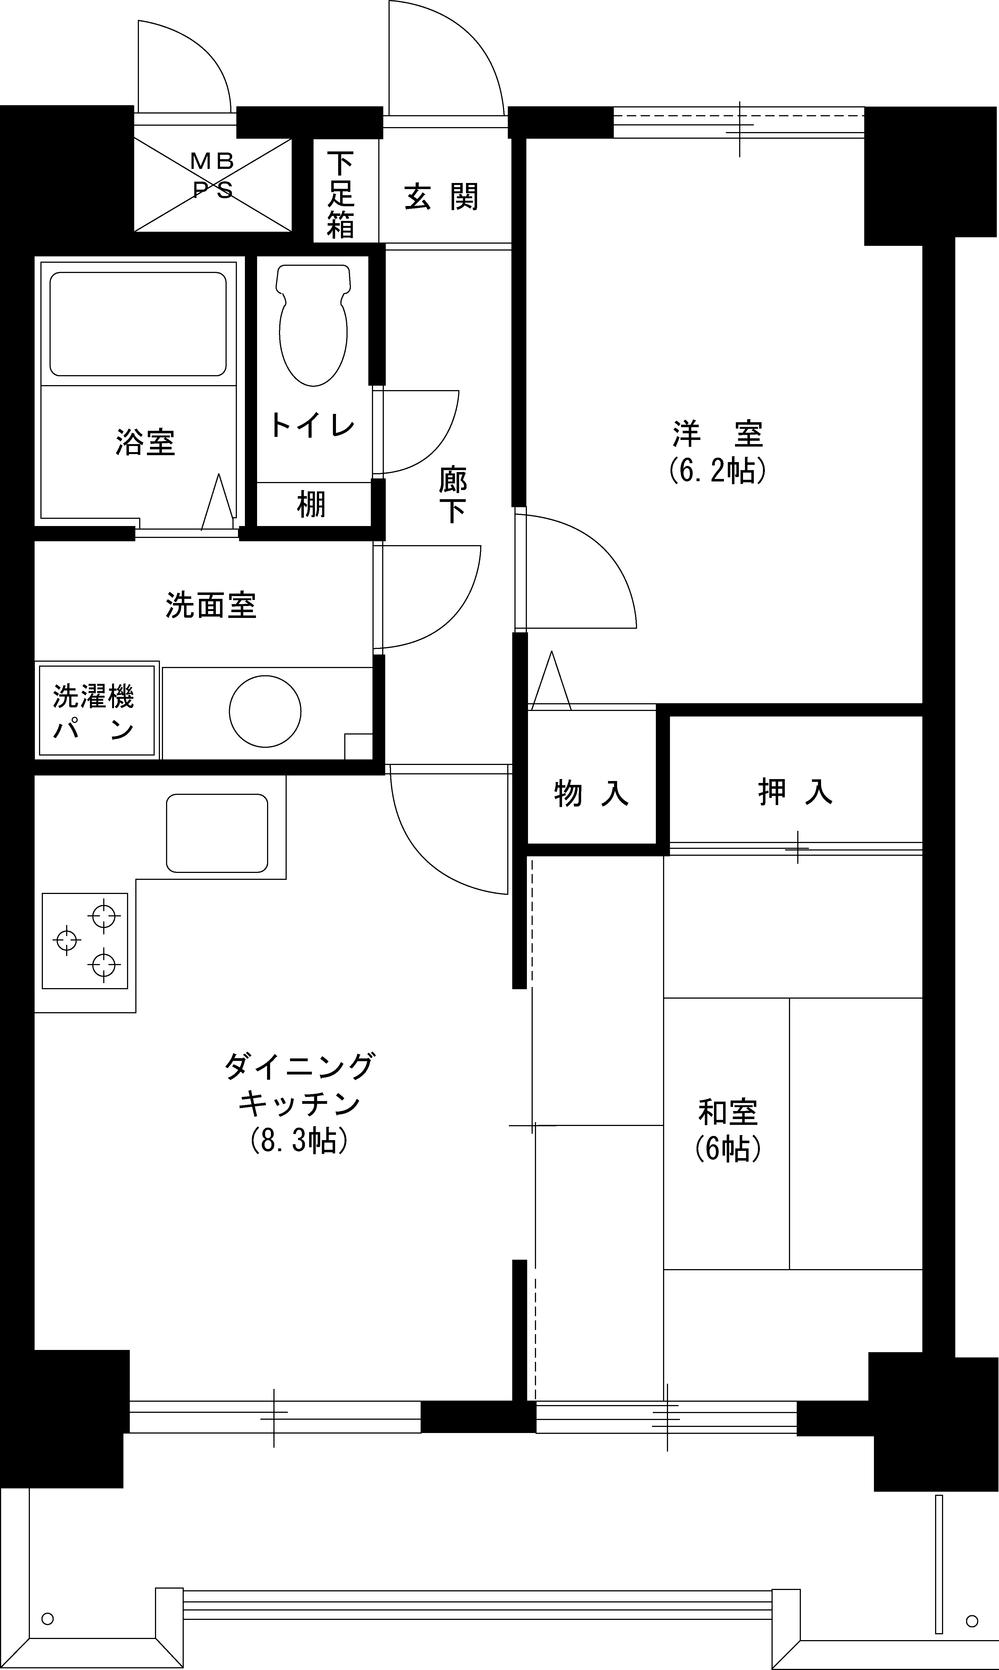 Floor plan. 2DK, Price 4.8 million yen, Footprint 49.5 sq m